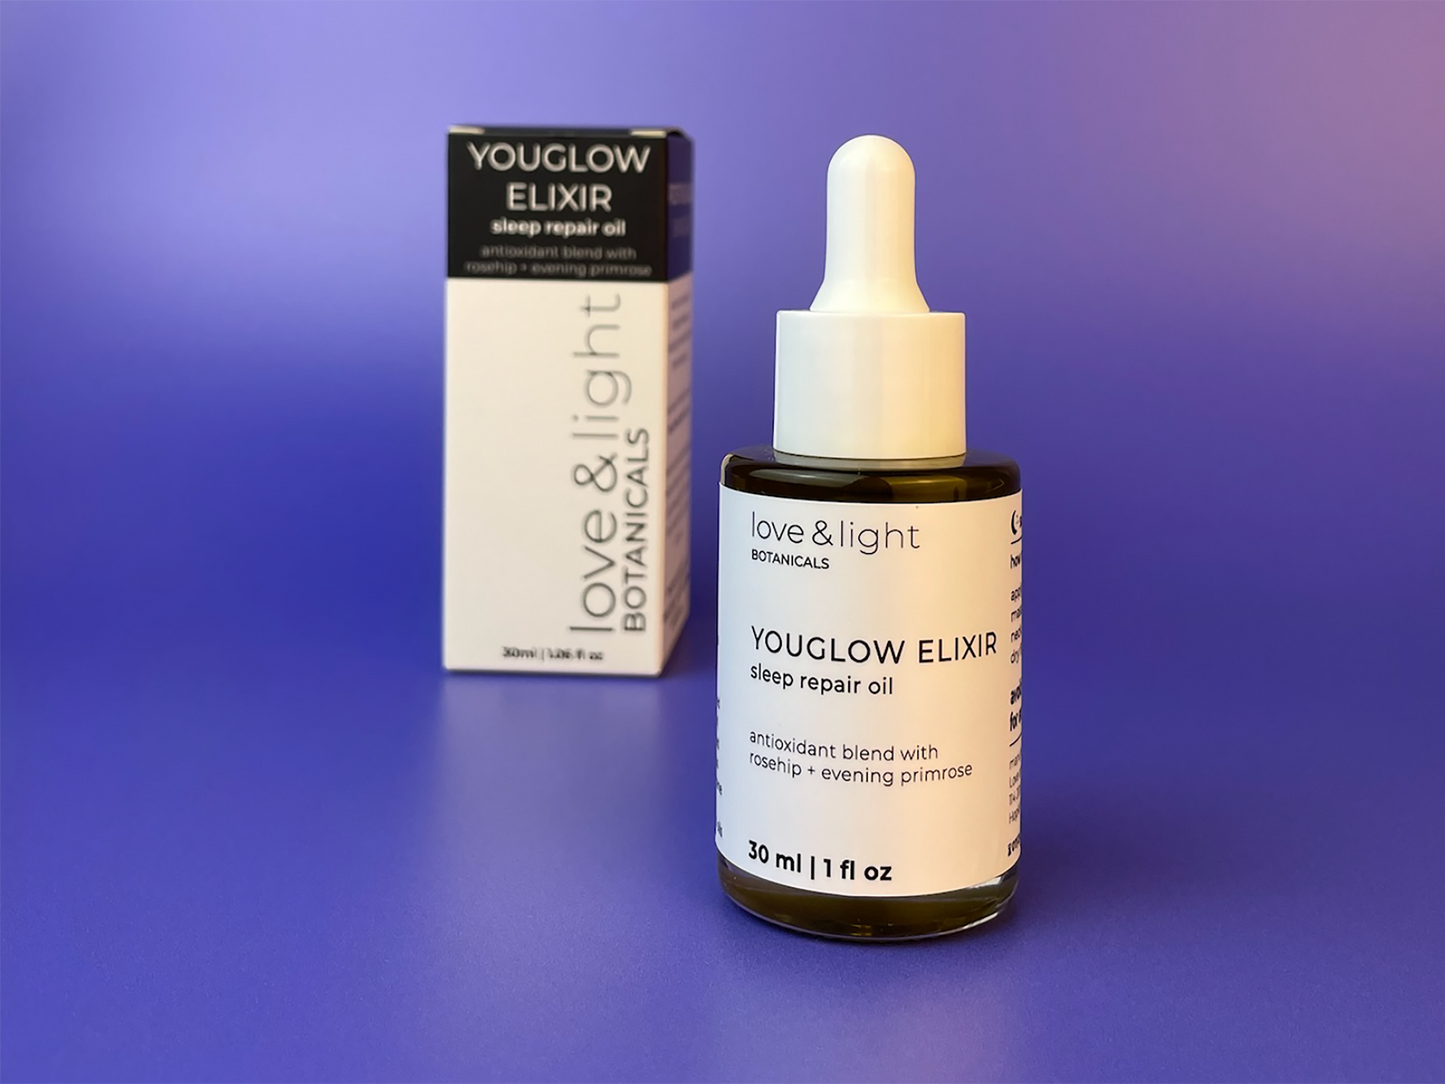 youglow elixir sleep repair oil